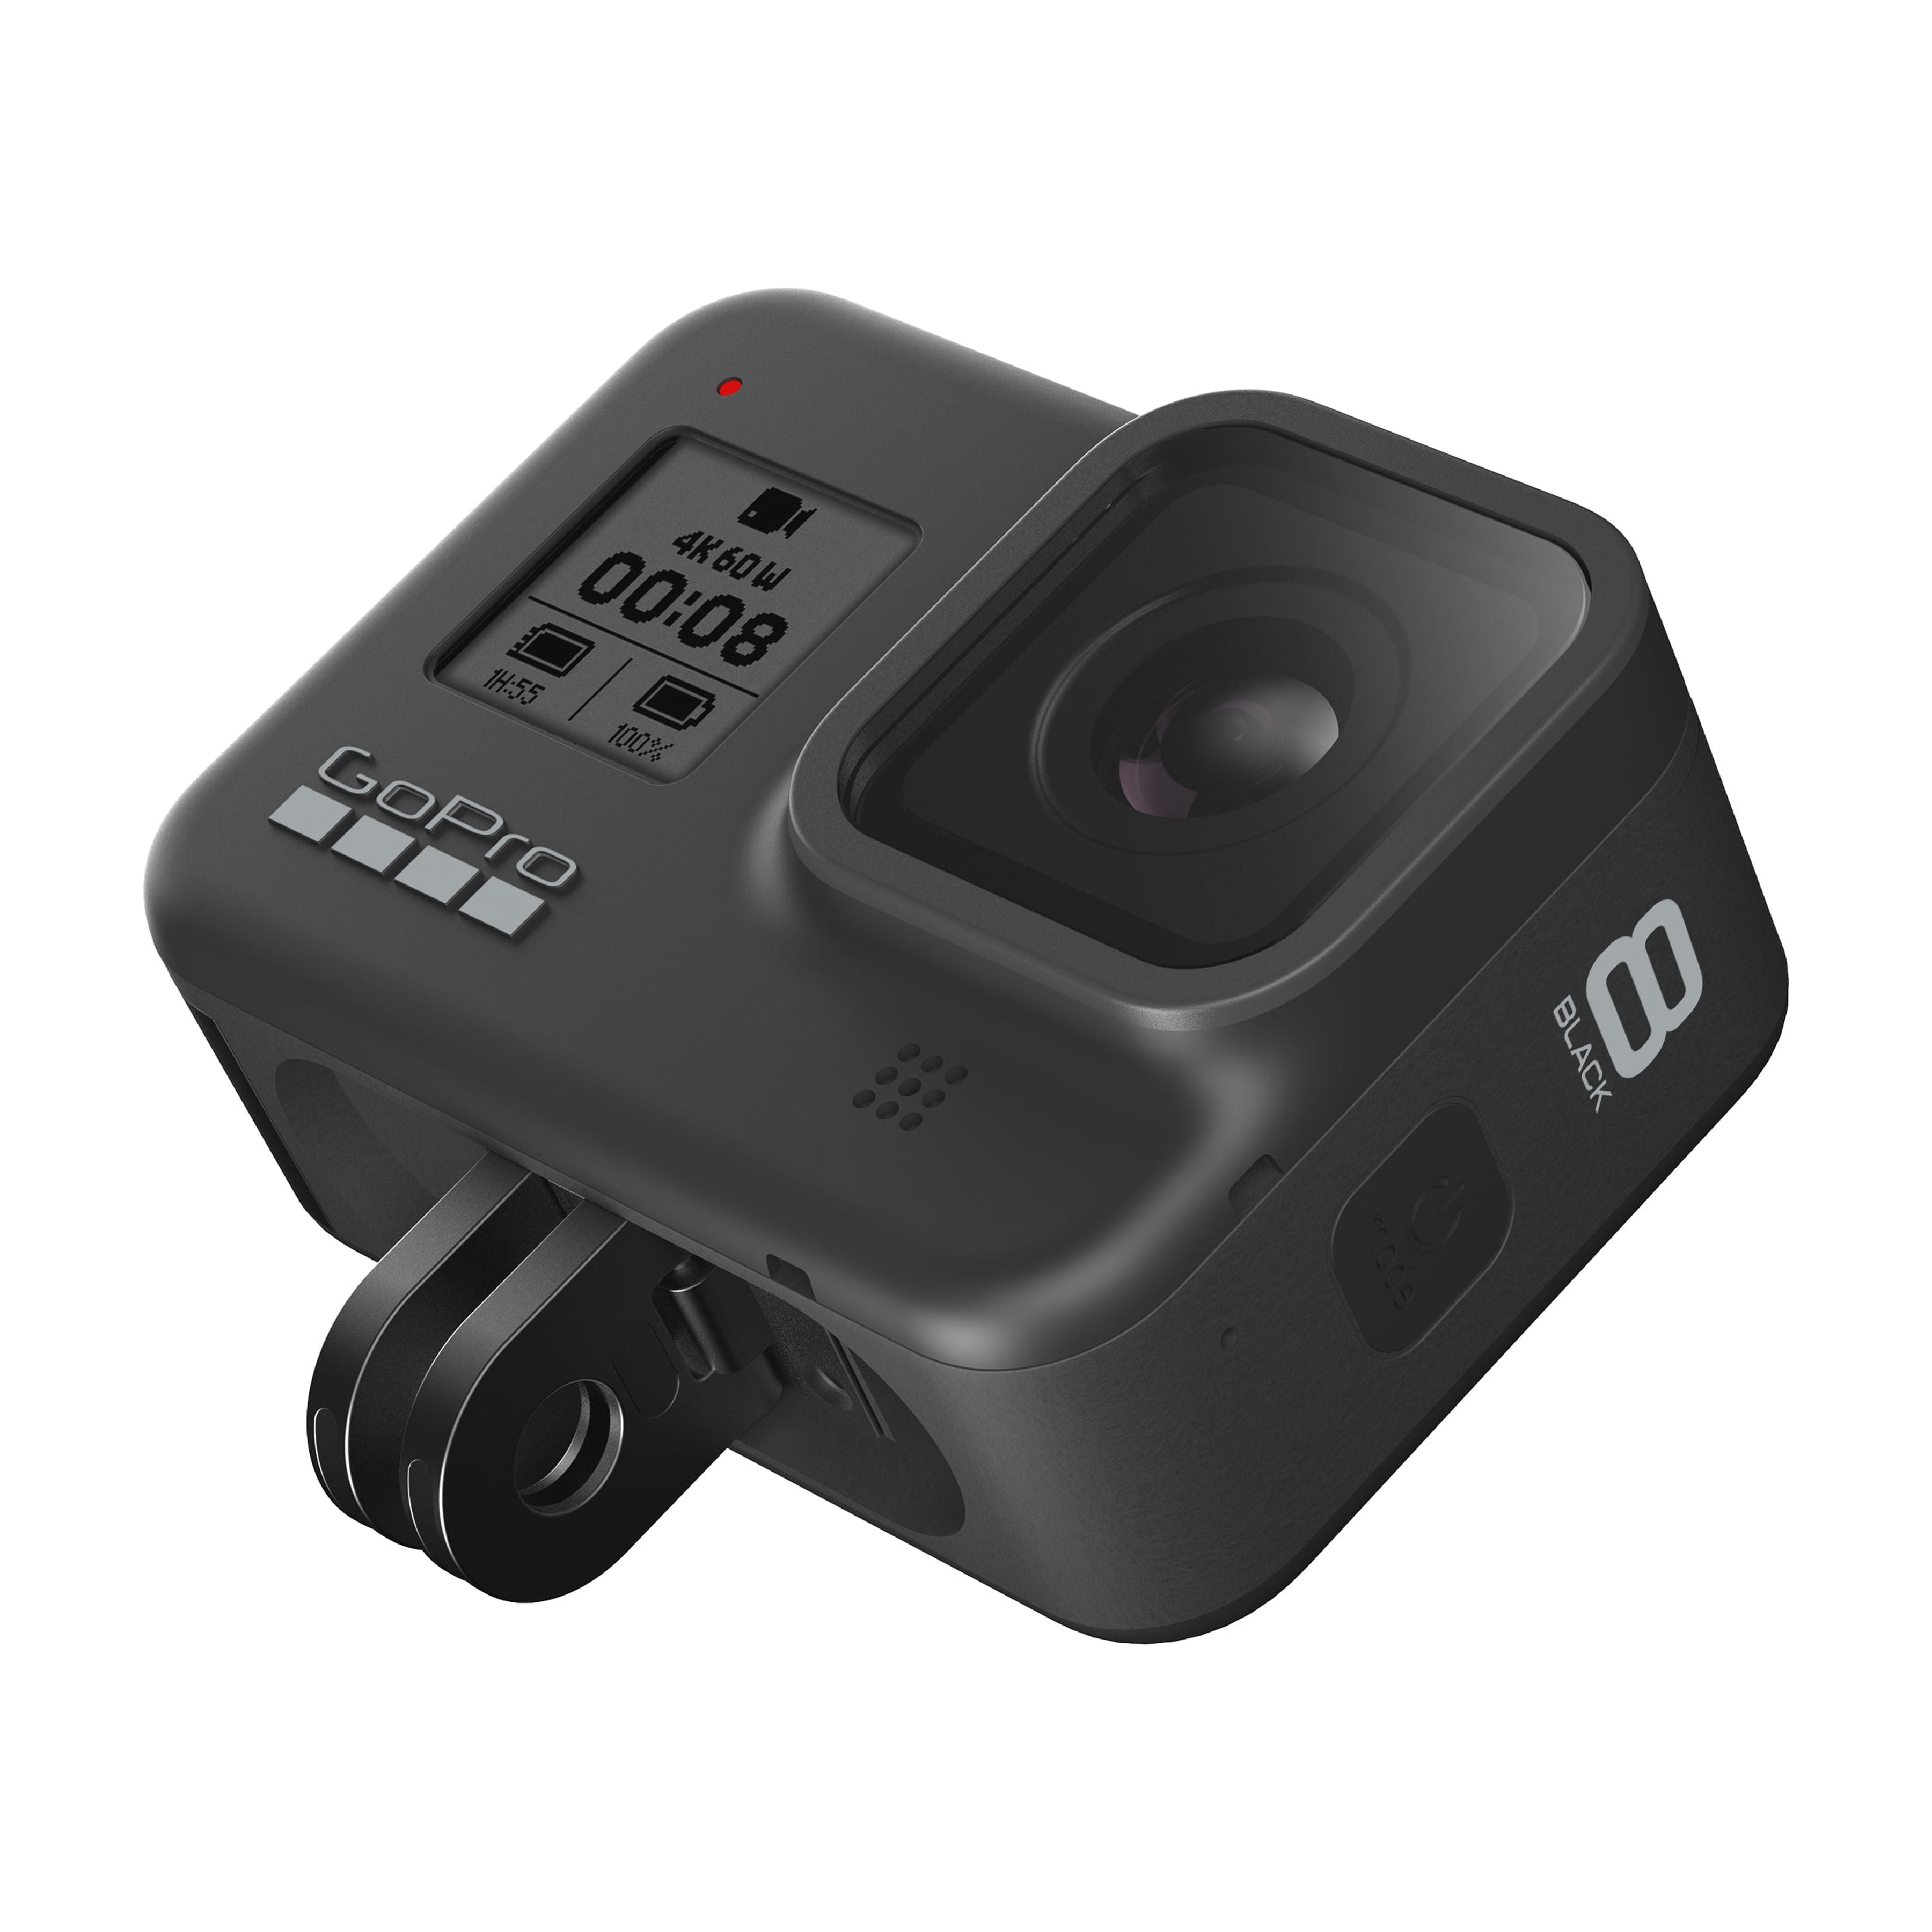 Bundle Vacances GoPro Hero 8 Noir + Fixation trépied + Carte SD 32Go +  Serre-tête - Caméra sport